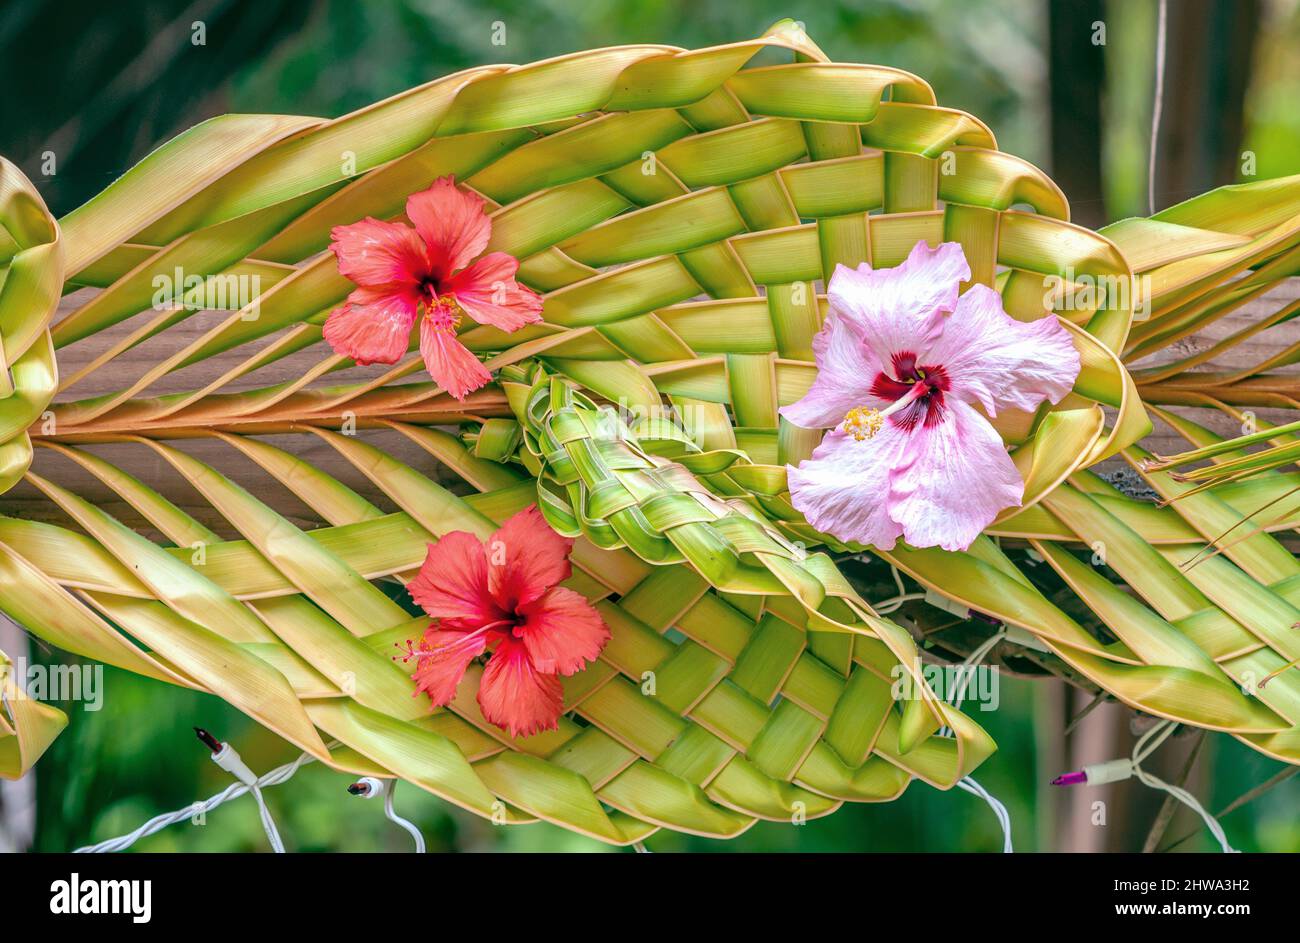 Primo piano di una decorazione in stile polinesiano fatta di foglie di palma intrecciate e fiori di ibisco all'Isola di Bora Bora, Polinesia Francese Foto Stock